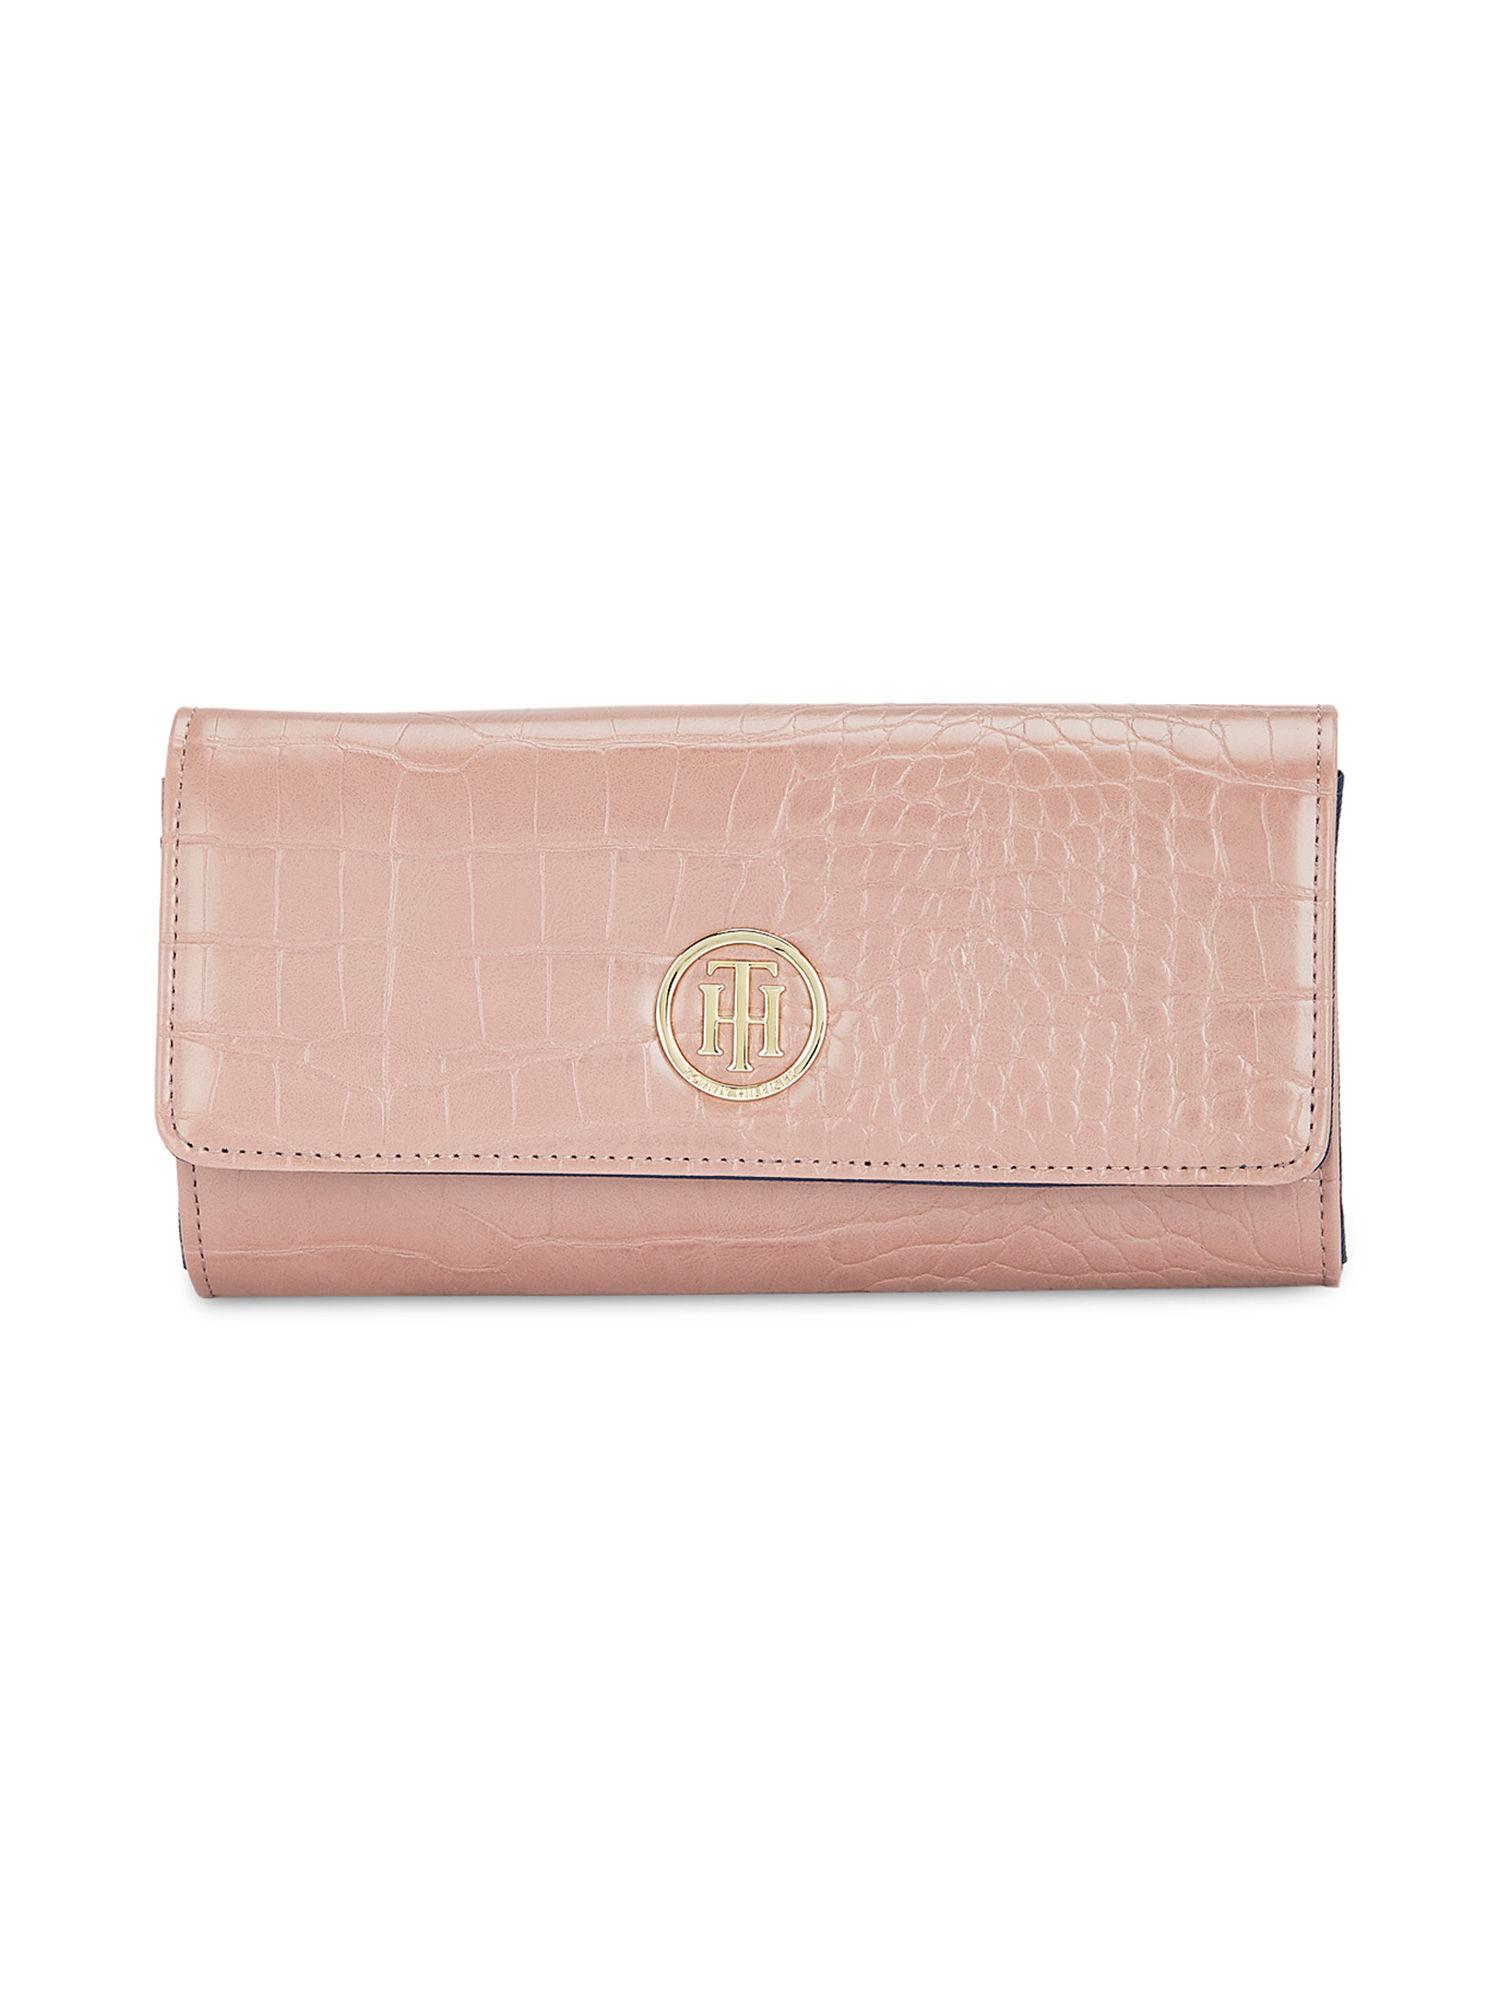 jocelyn plus womens salmon pink textured wallet